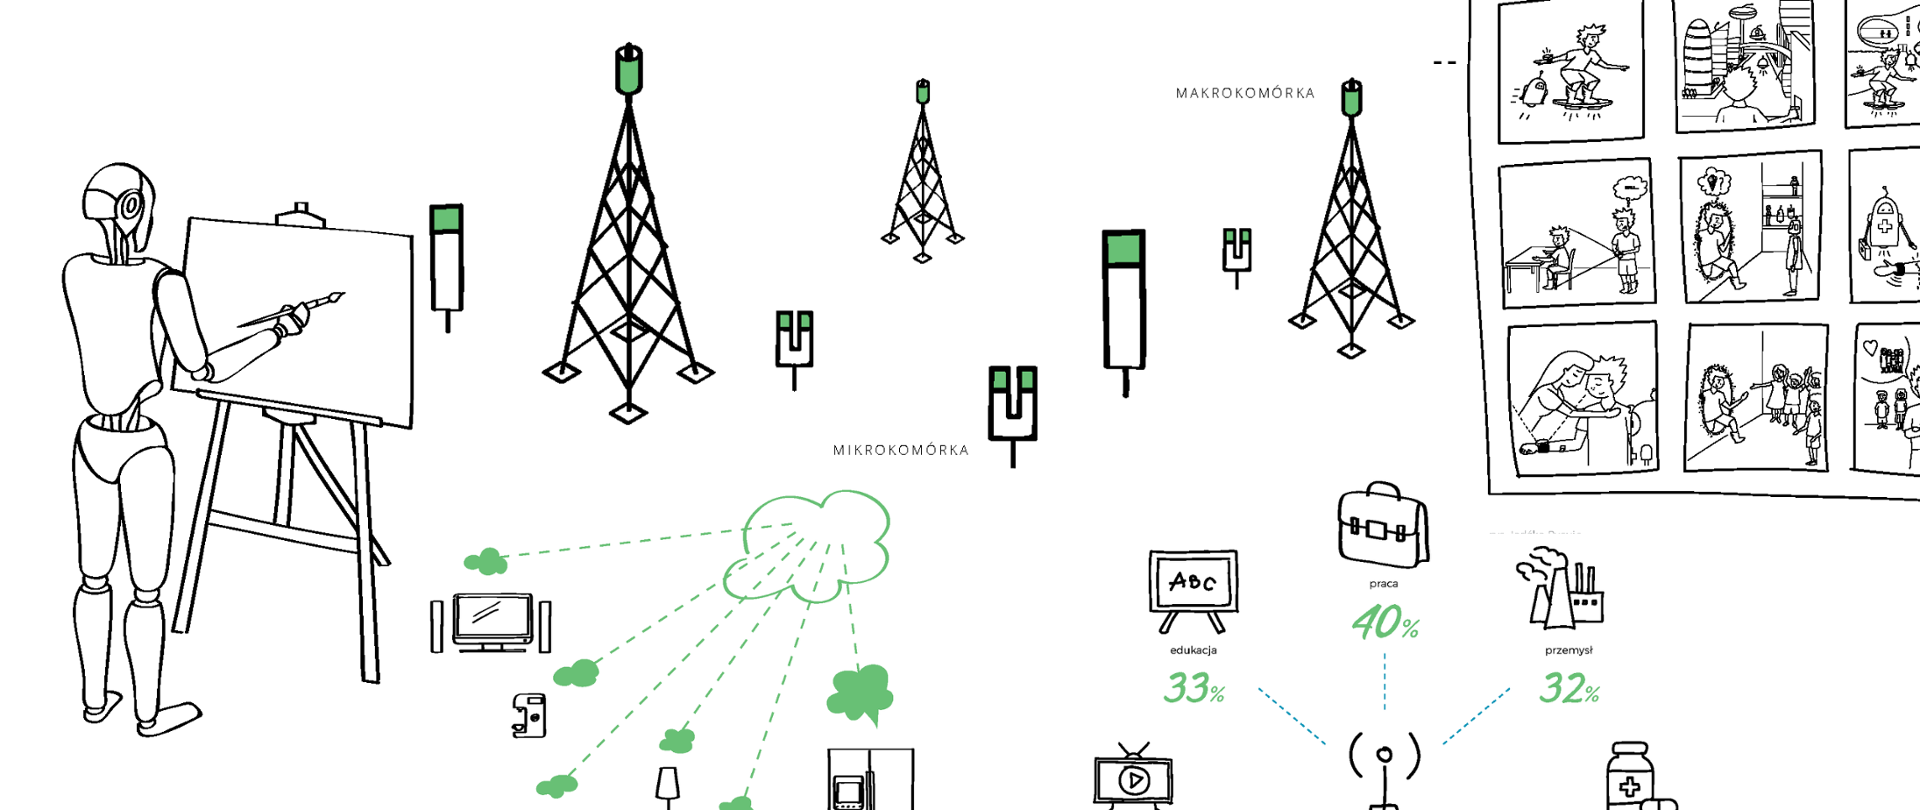 Grafika przedstawiająca m.in. fragmenty schematu sieci, zastosowania sieci 5G - materiał ilustracyjny